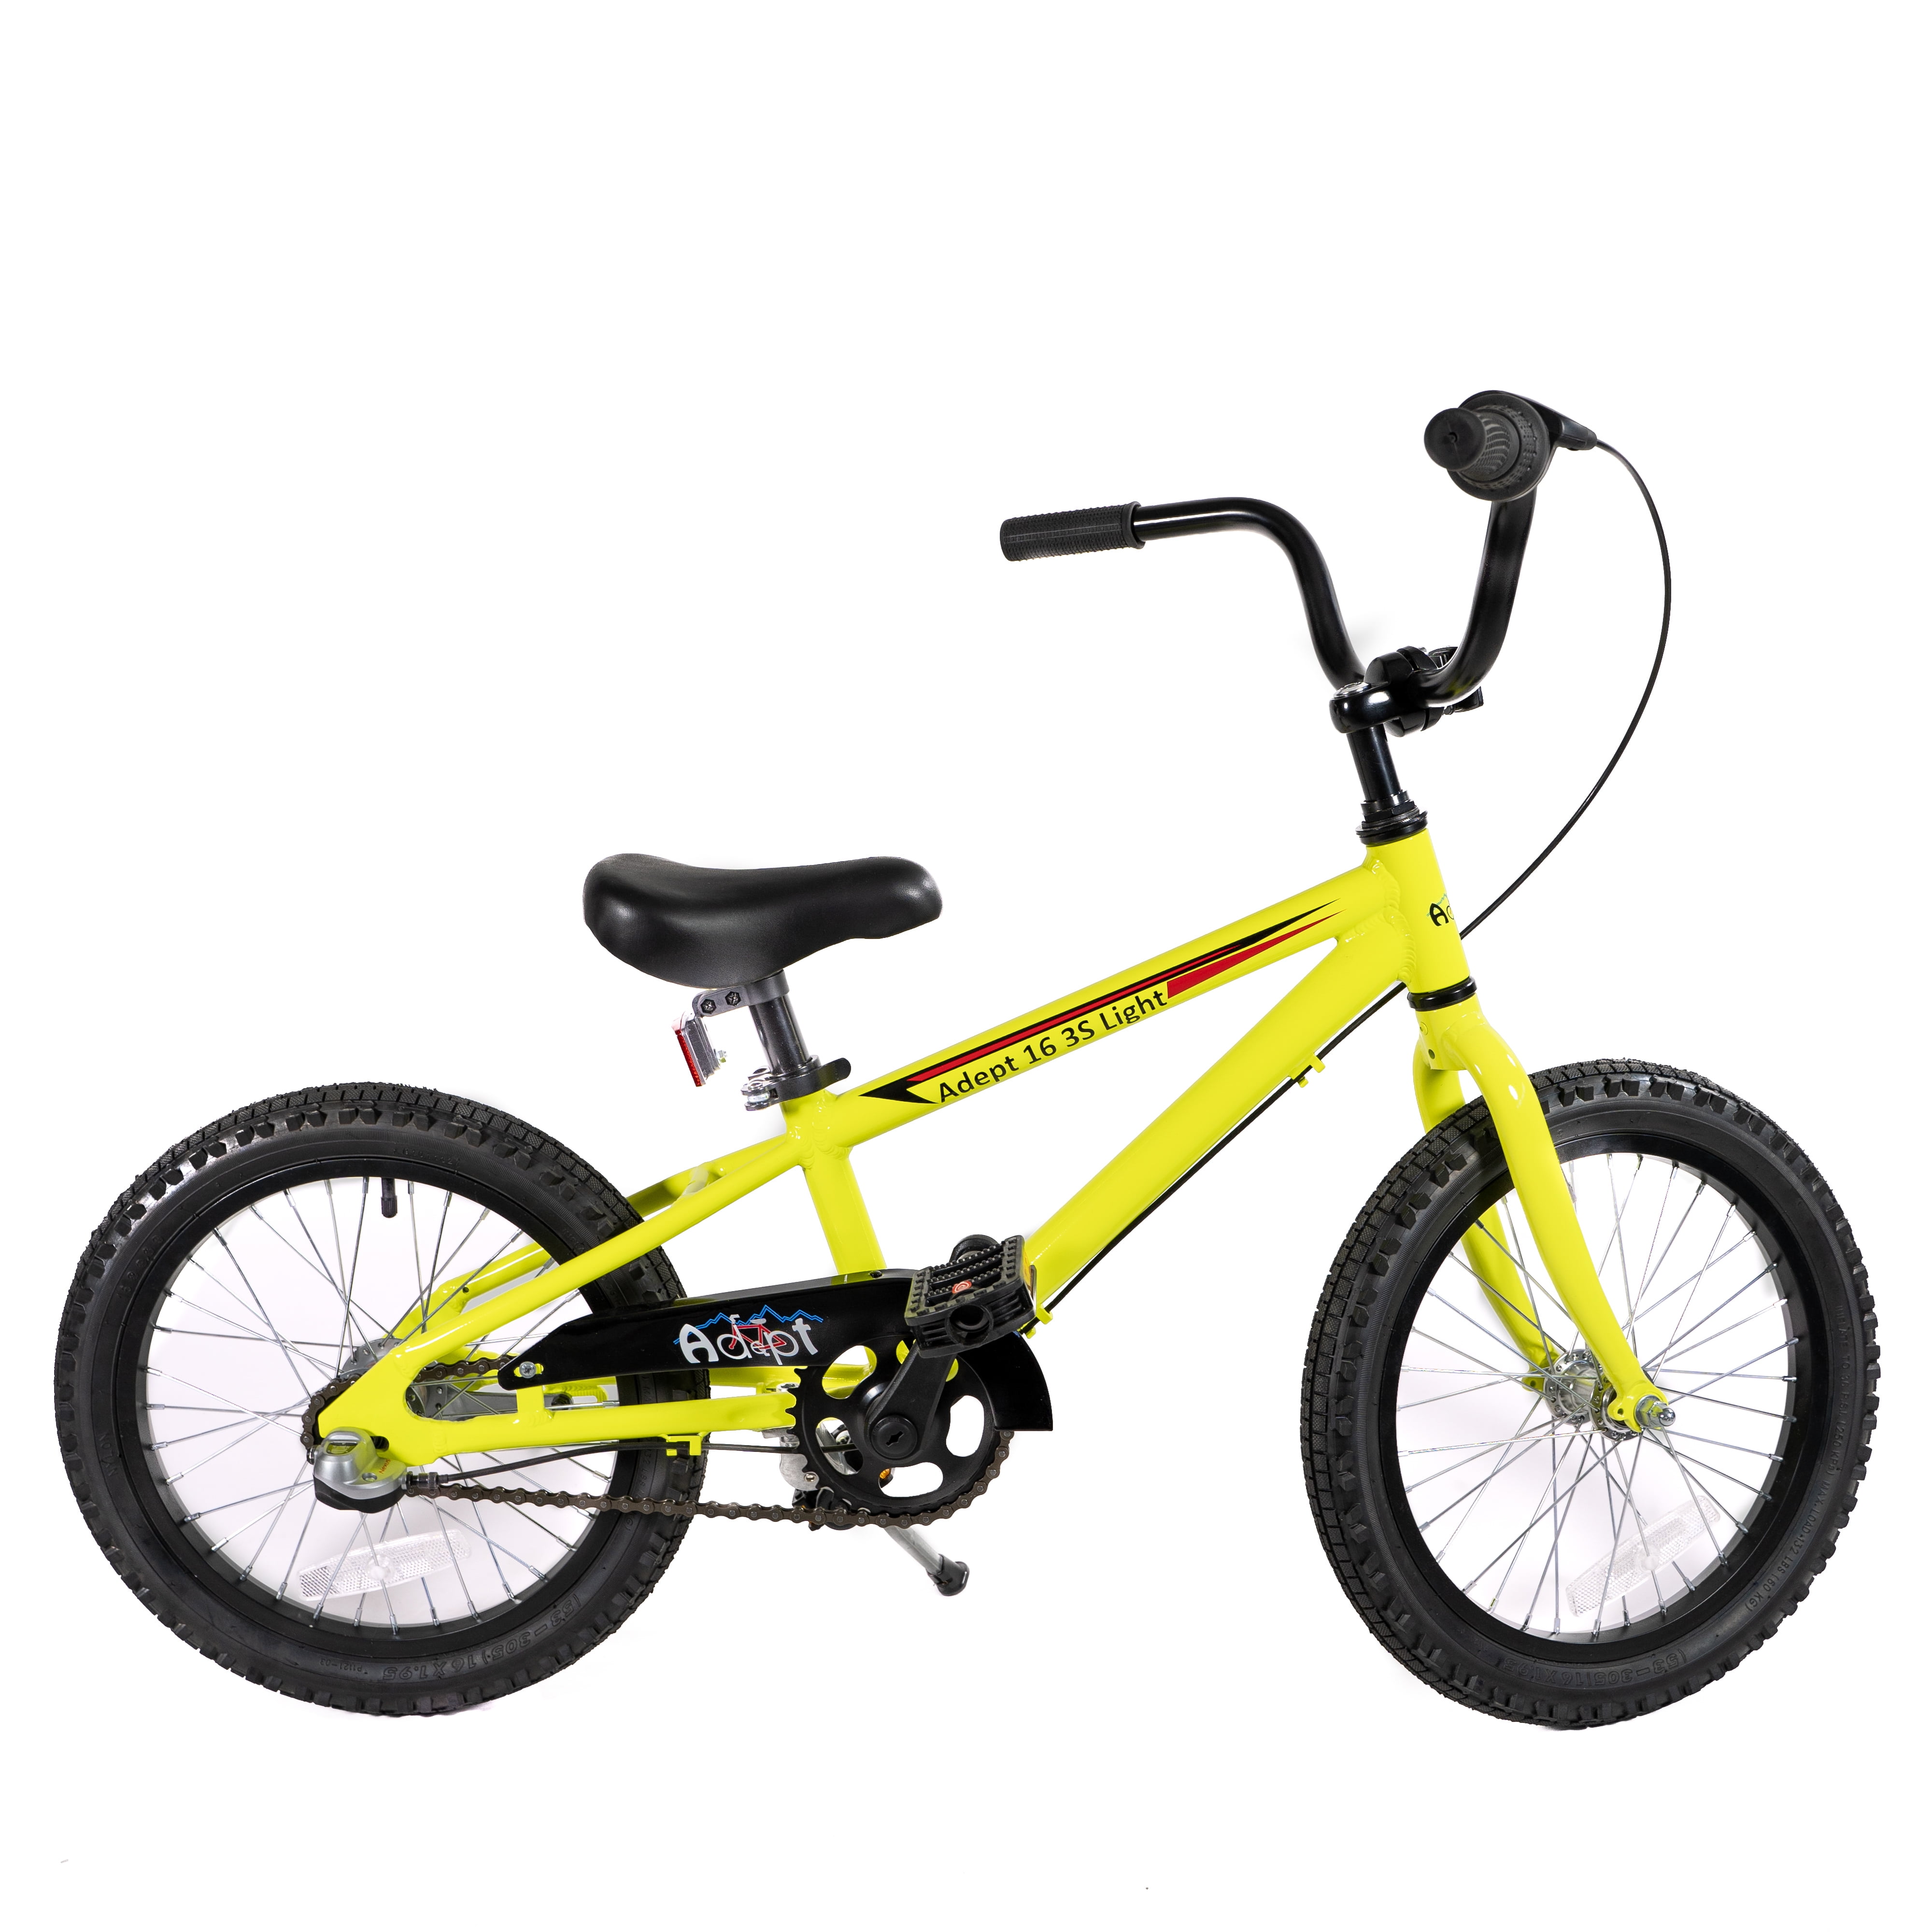 EZUOGO Bicicleta Niño, Bicicleta para Niños 2 a 6 años, con Ruedas de  Entrenamiento, Bicicleta Infantil con Guardabarros para Ciclistas  Tempranos